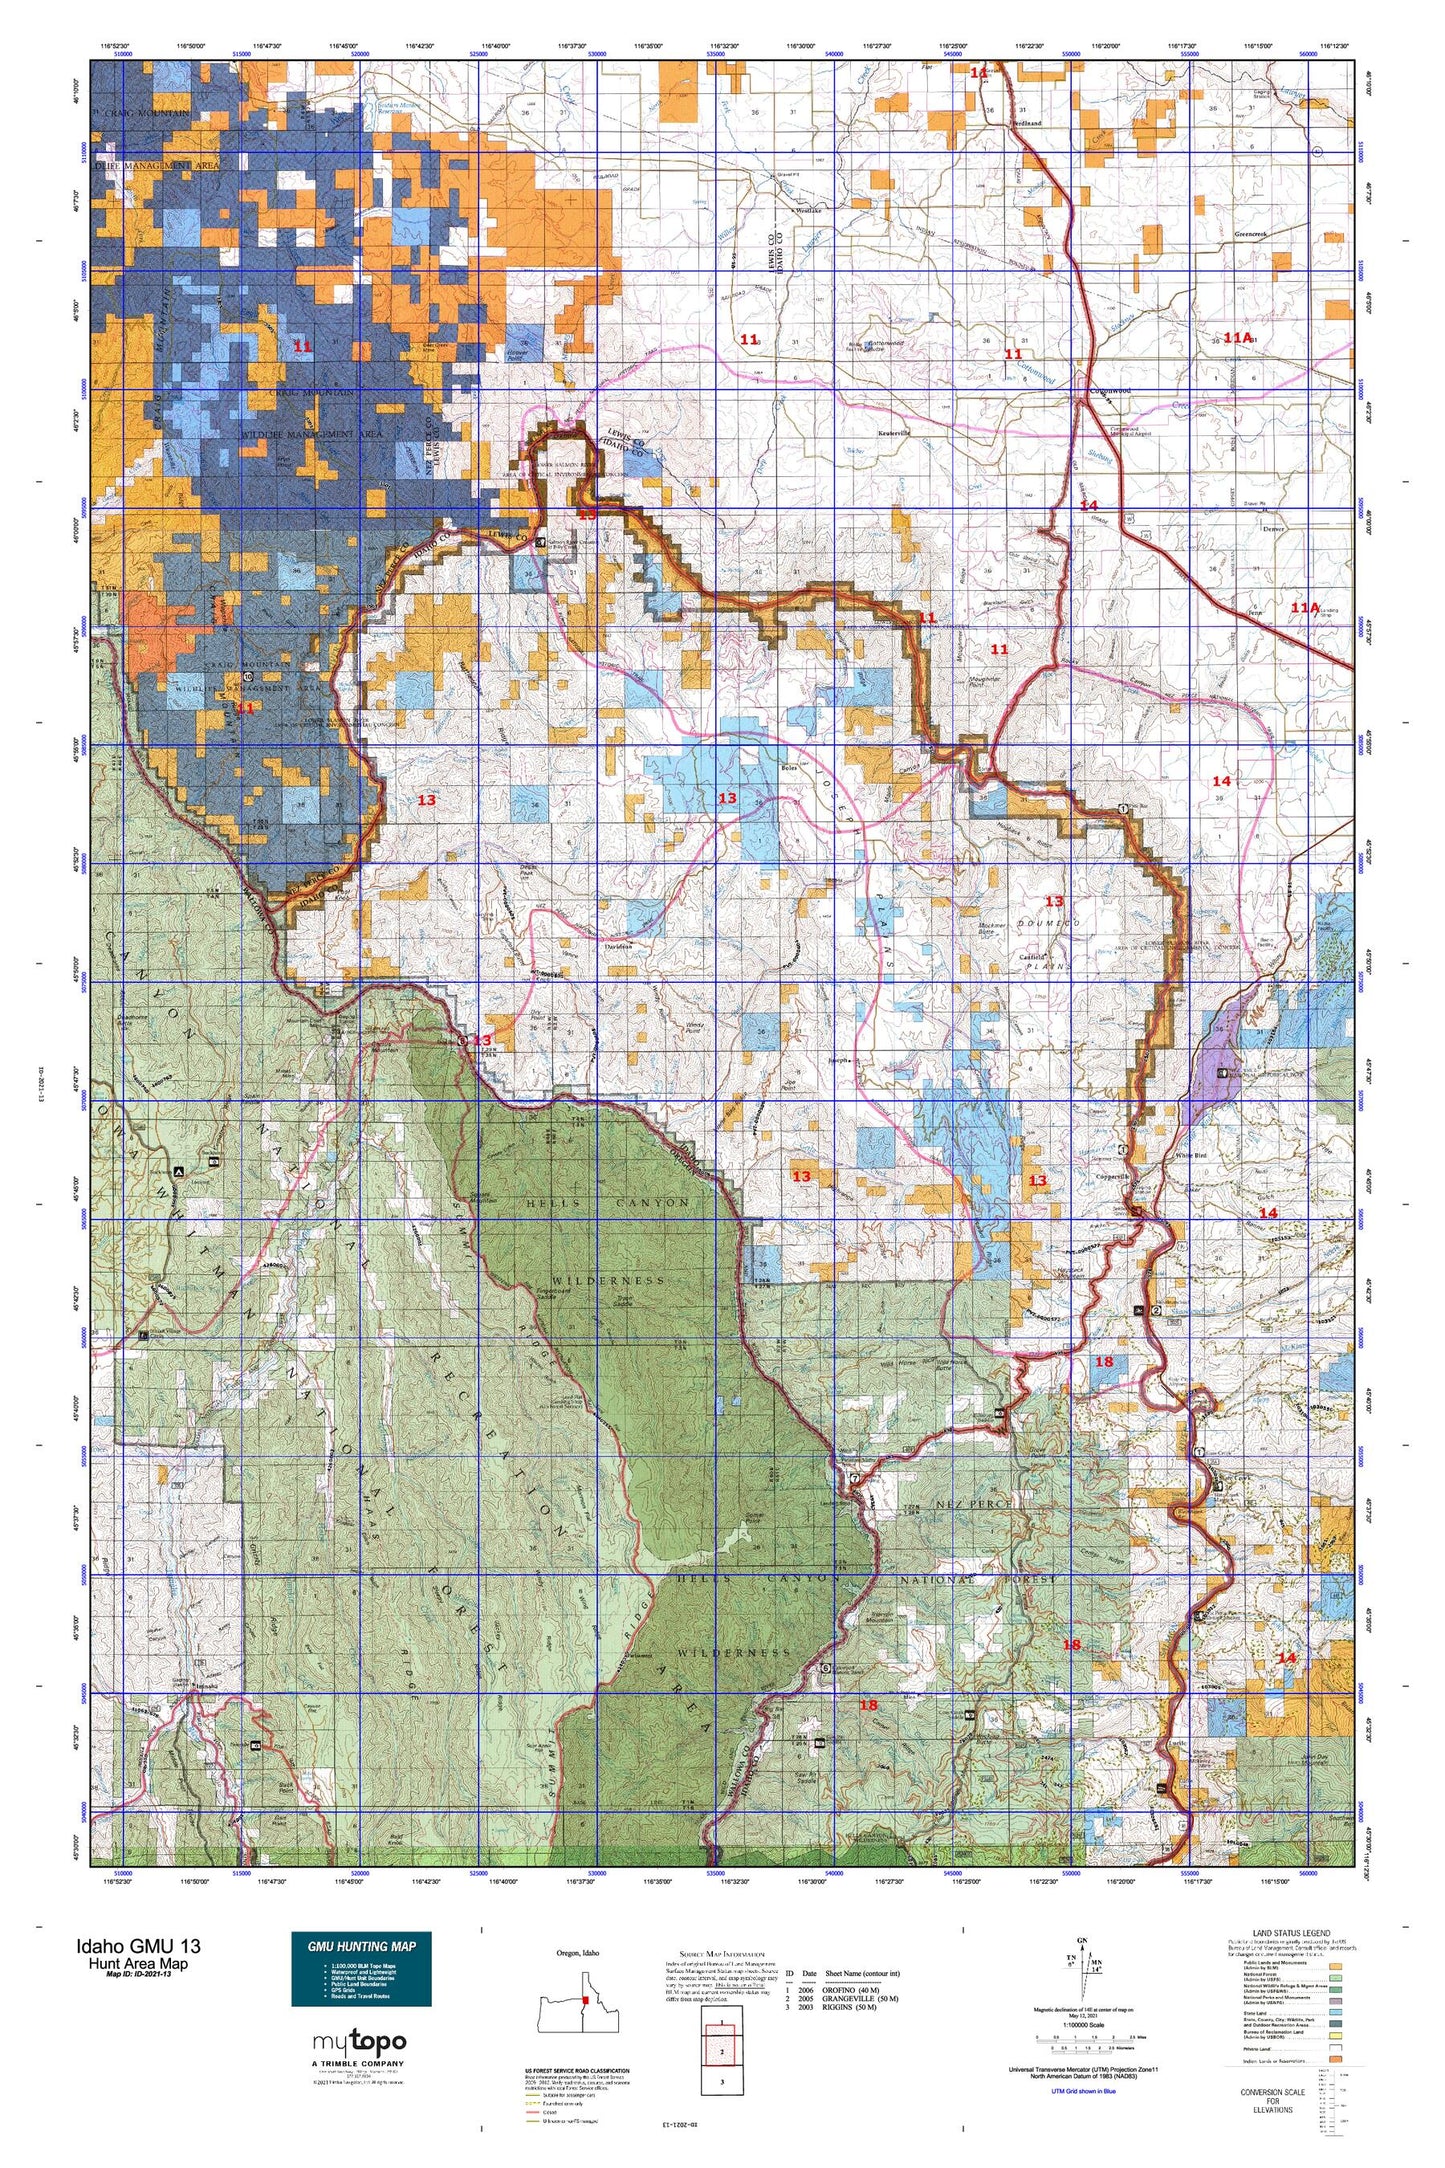 Idaho GMU 13 Map Image